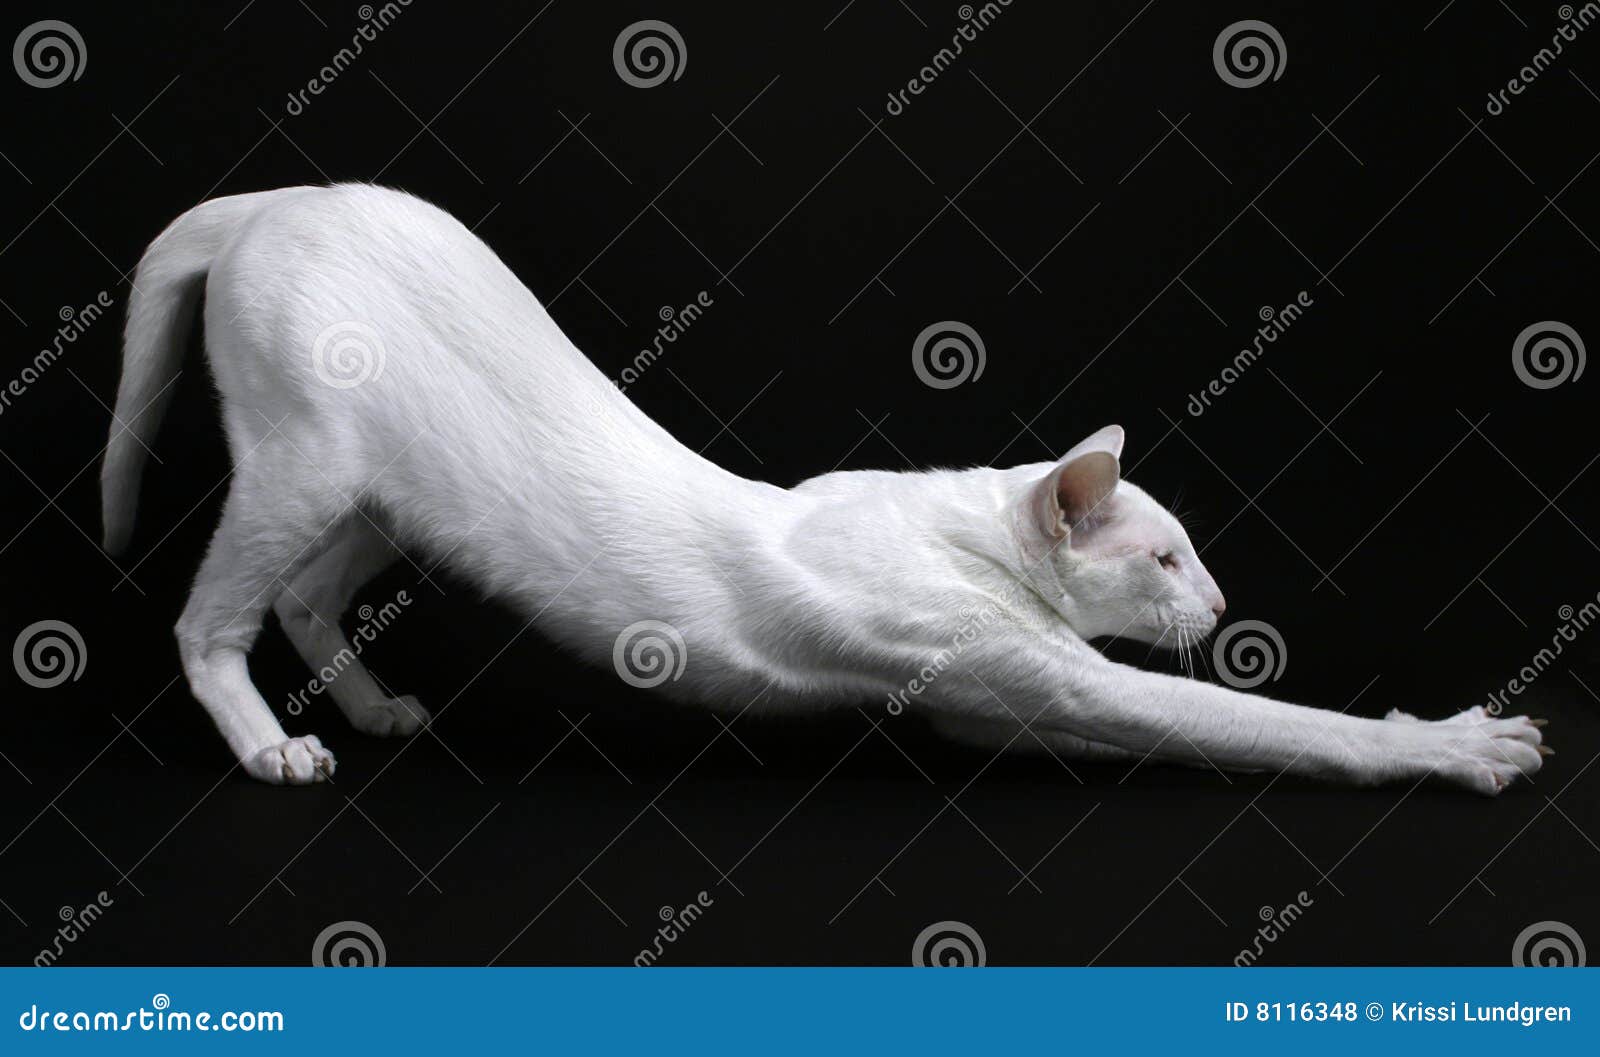 white cat stretching